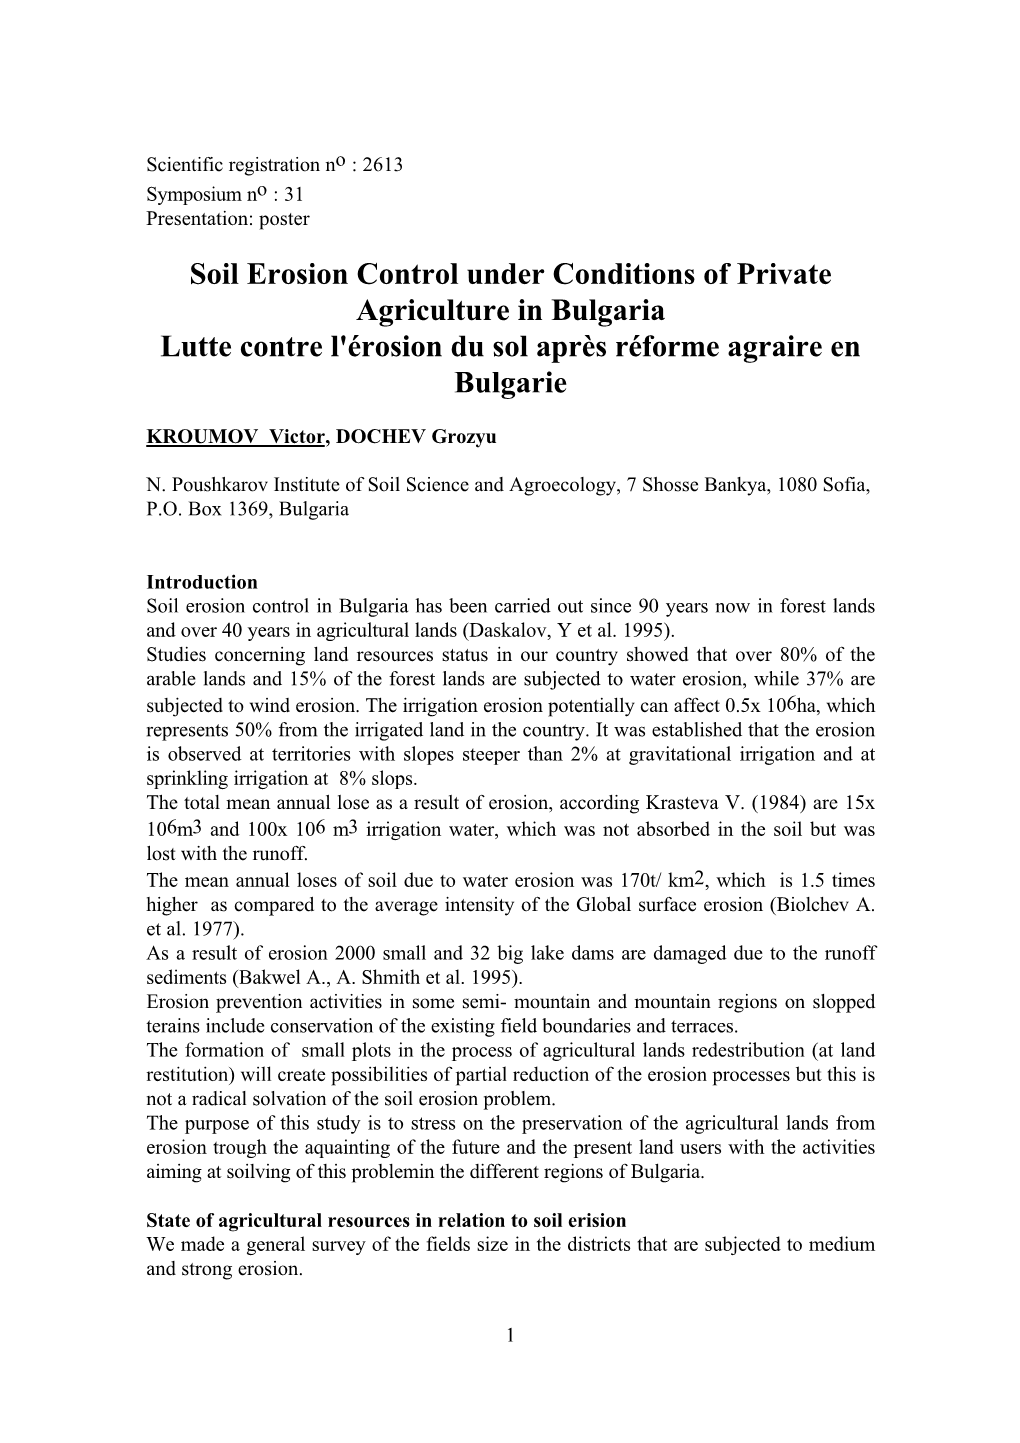 Soil Erosion Control Under Conditions of Private Agriculture in Bulgaria Lutte Contre L'érosion Du Sol Après Réforme Agraire En Bulgarie